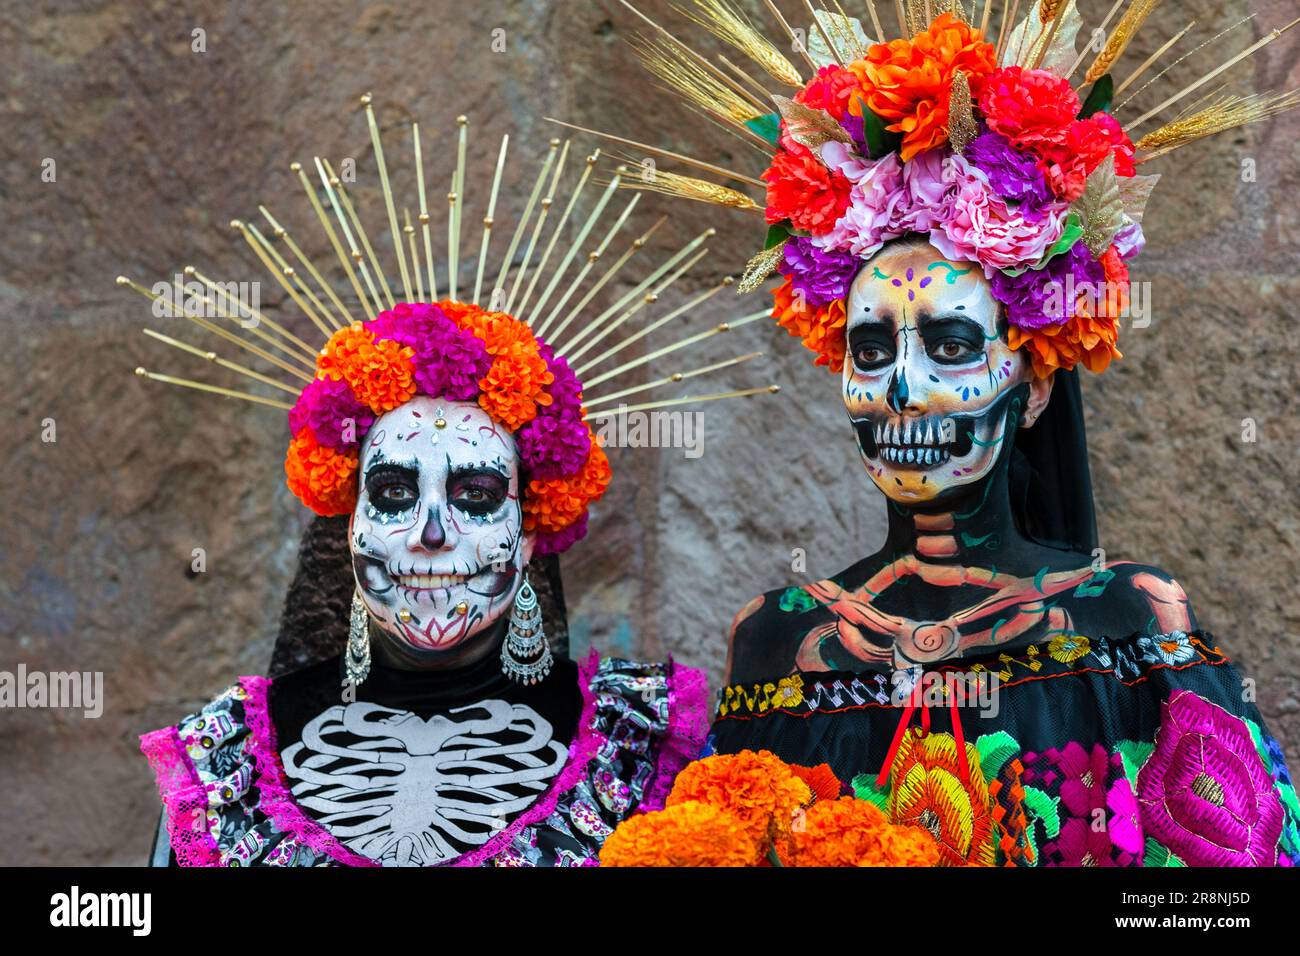 Junge mexikanische Frauen, die als La Catrina verkleidet sind, nehmen an den Feierlichkeiten zum Todestag in Morelia, Mexiko, Teil. Stockfoto